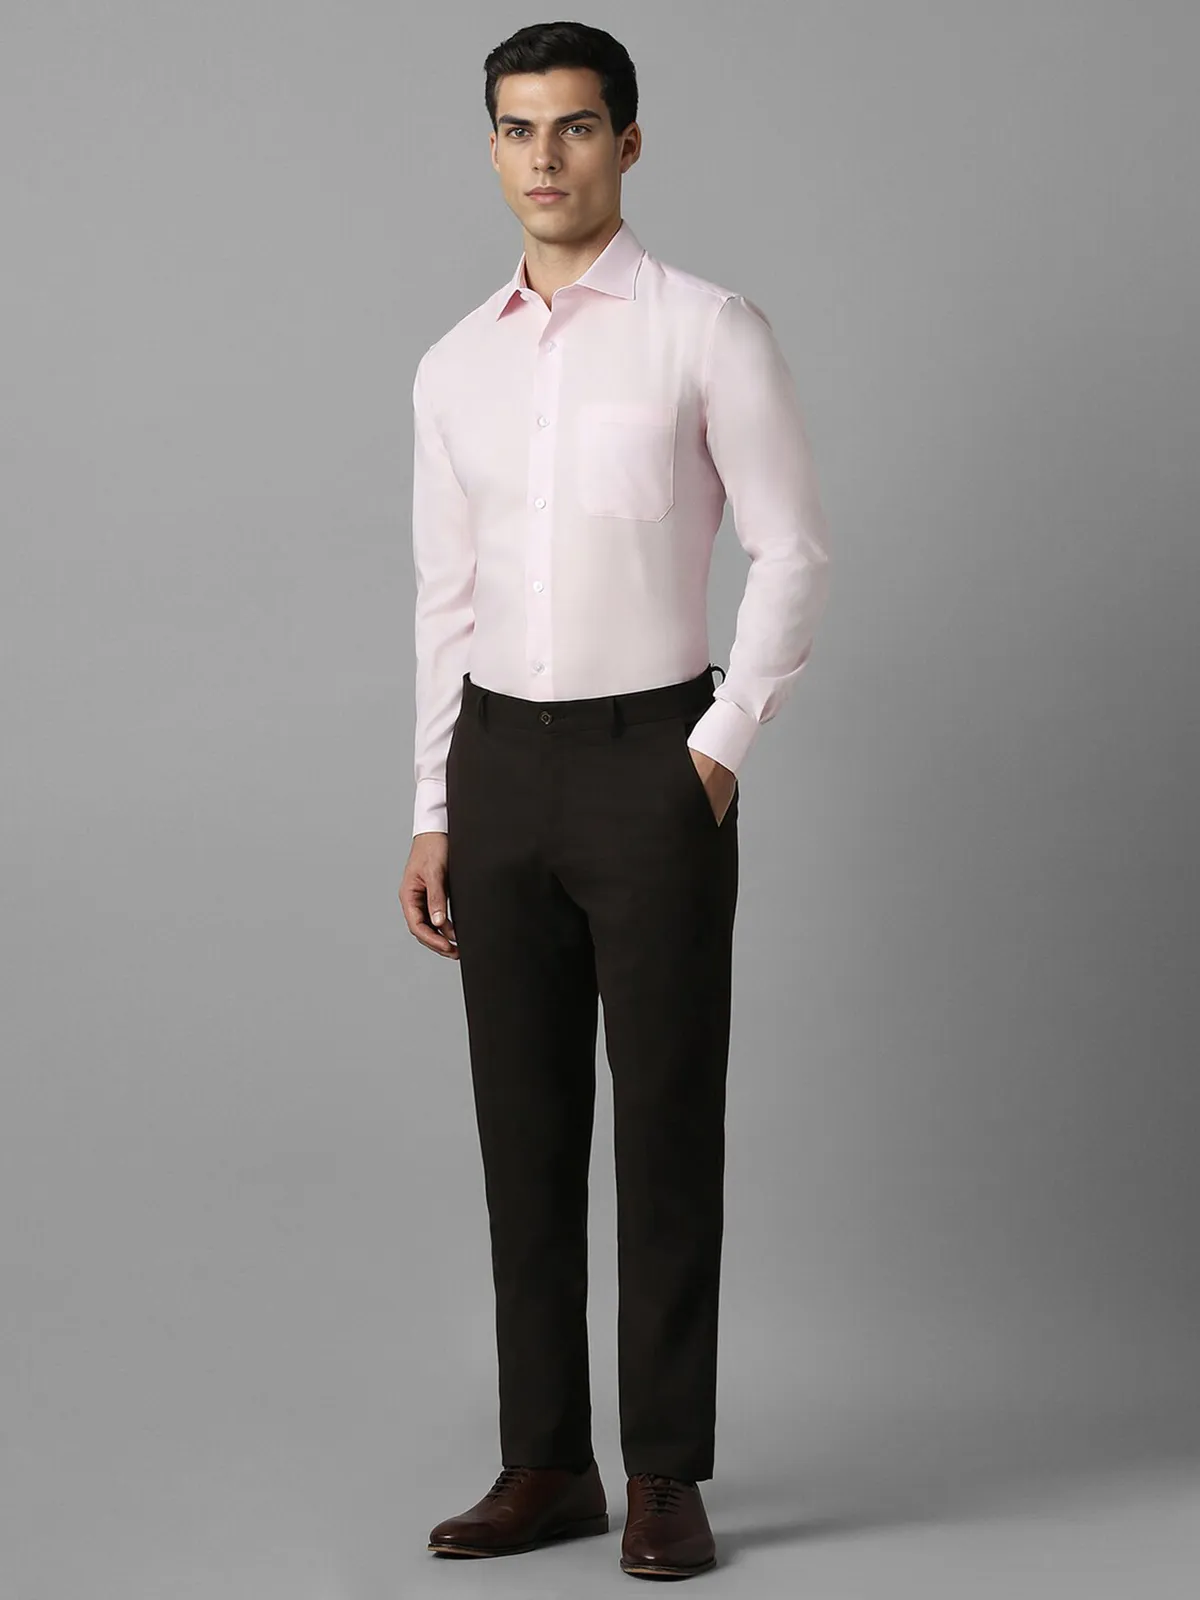 LOUIS PHILIPPE plain pink cotton shirt